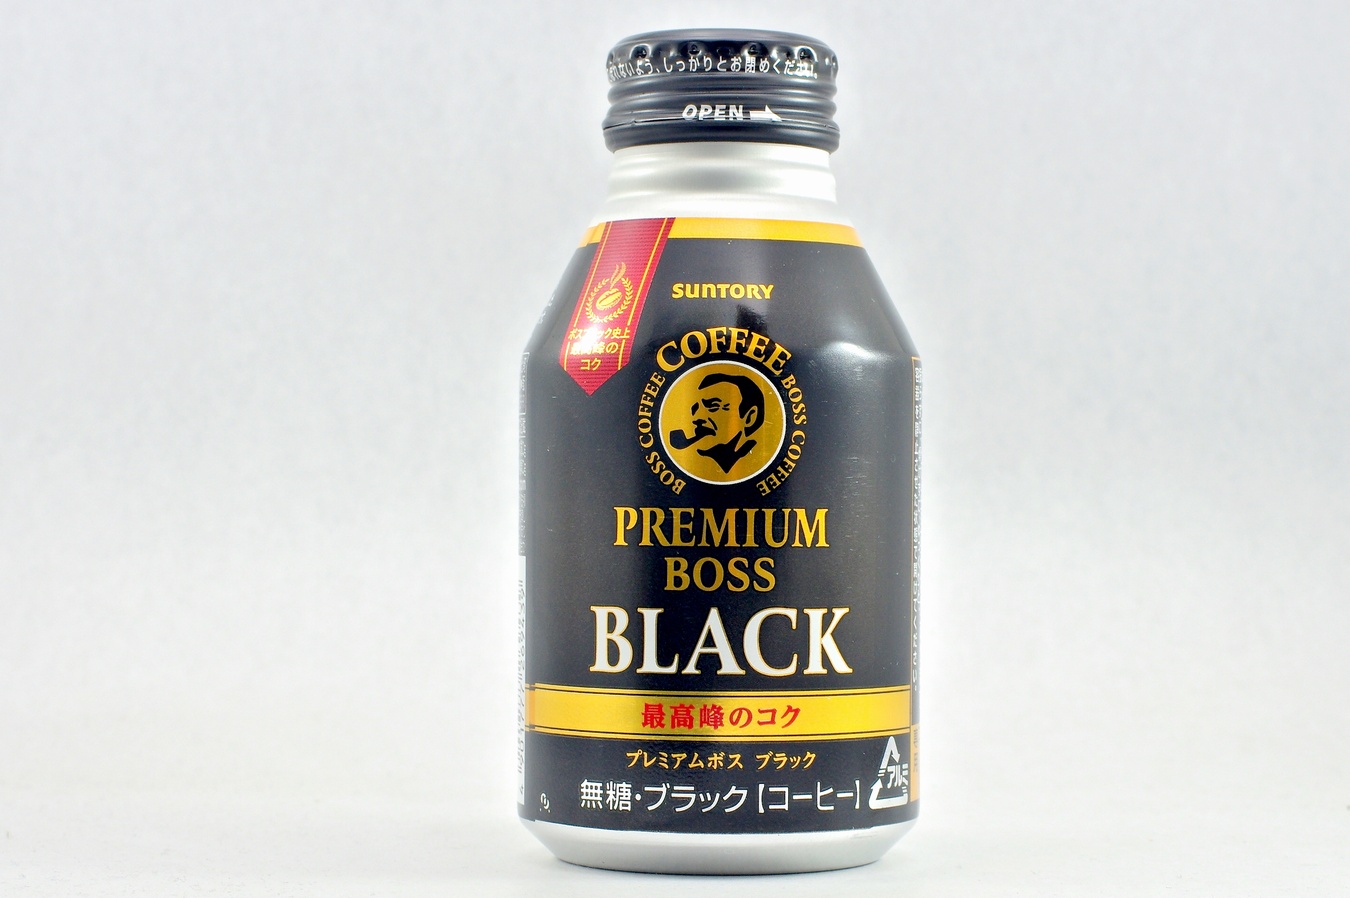 プレミアムボス ブラック 300gボトル缶 2015年3月